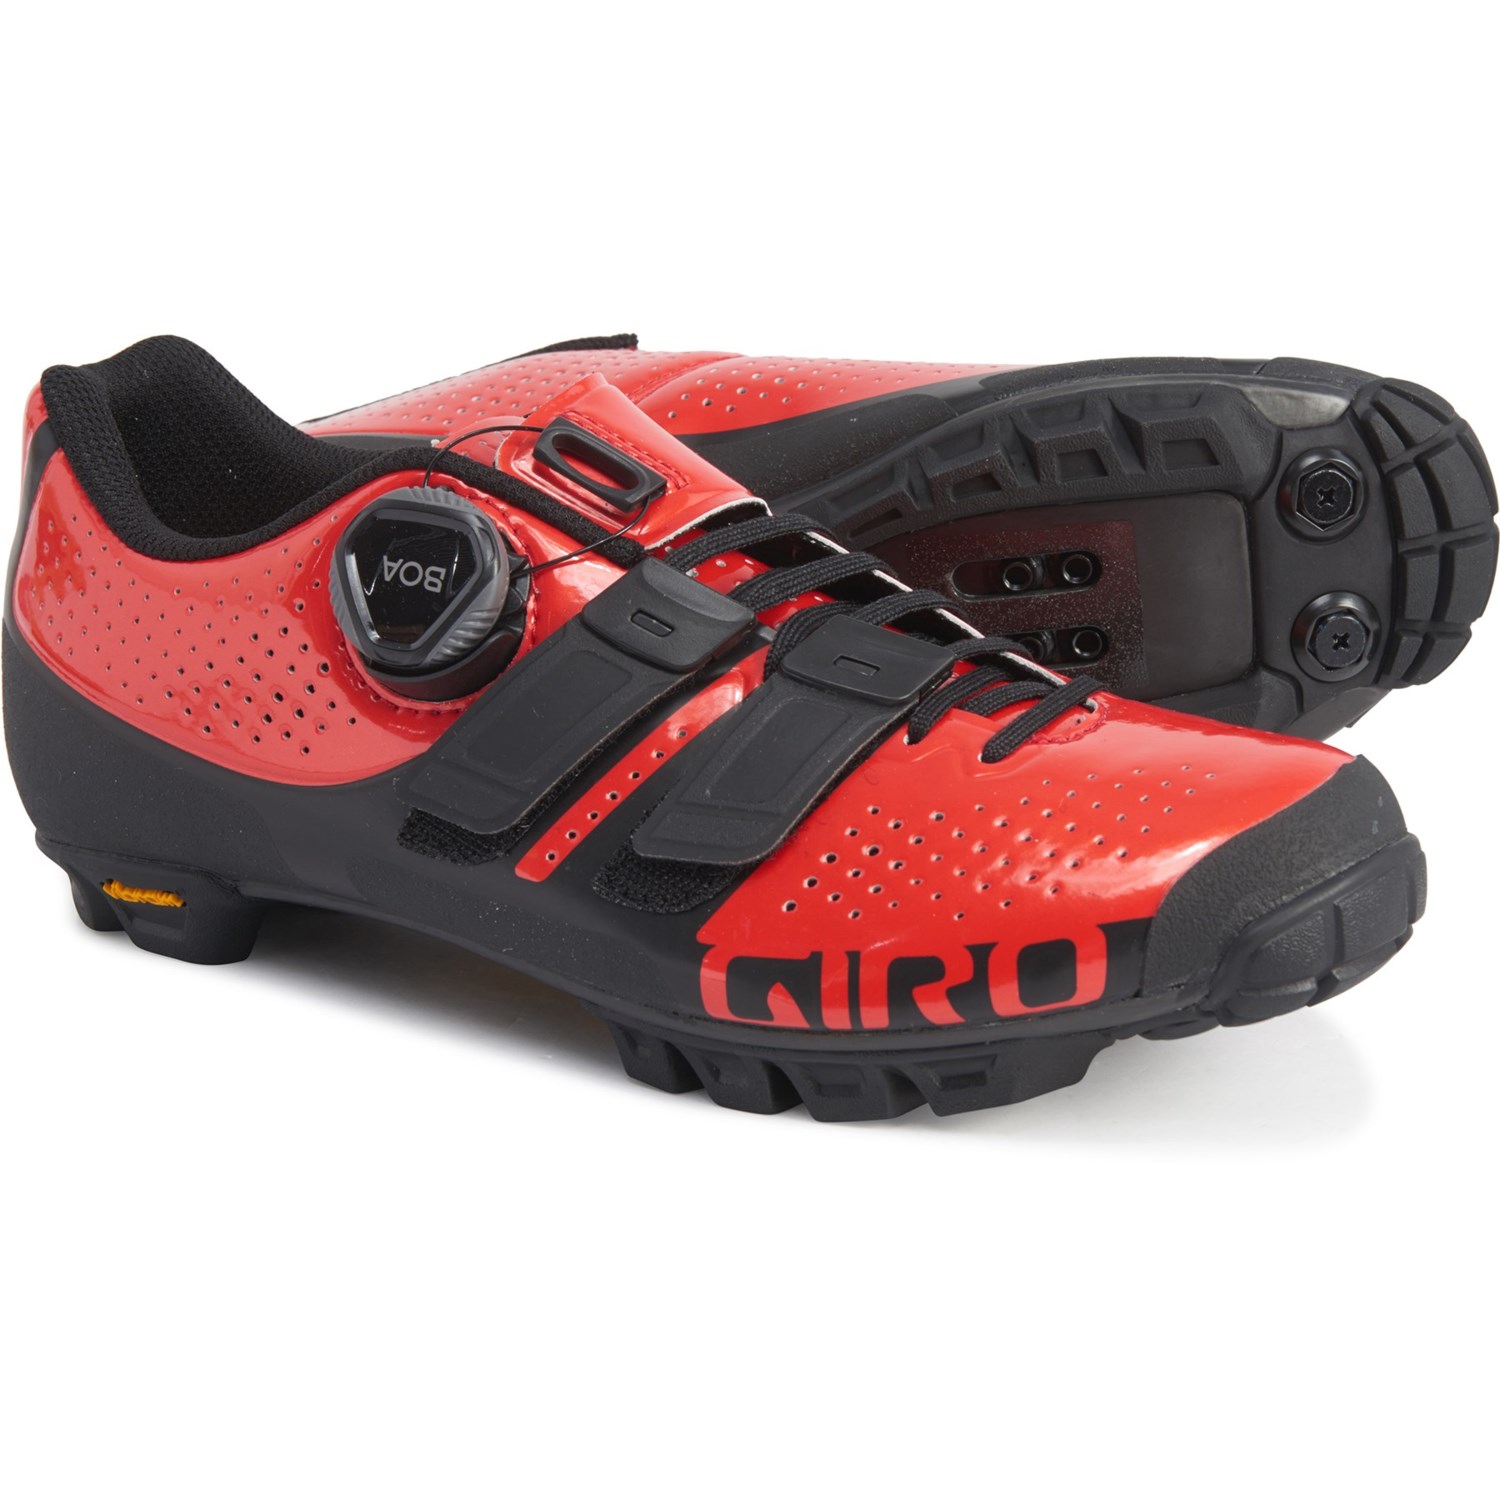 giro women's mountain bike shoes